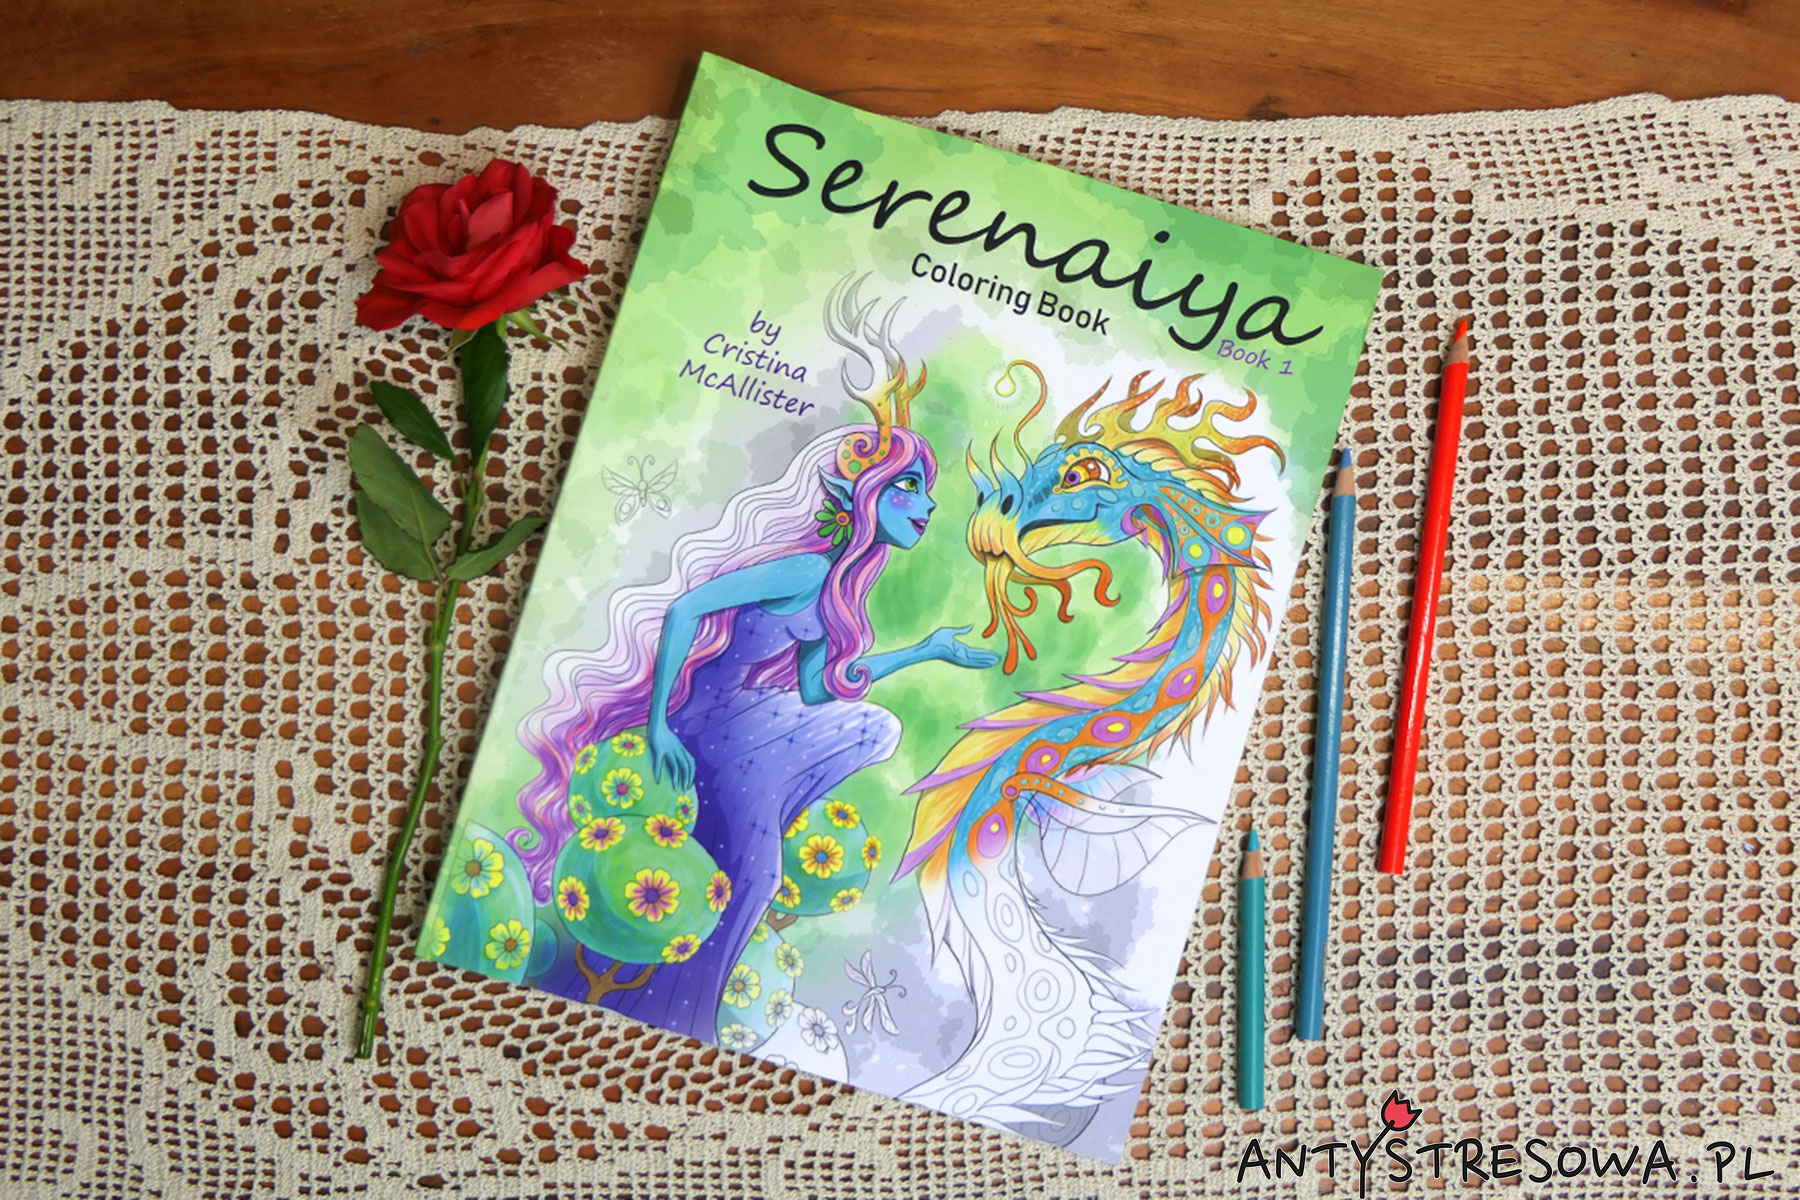 Serenaiya Coloring Book - kolorowanka dla dorosłych pełna elfów